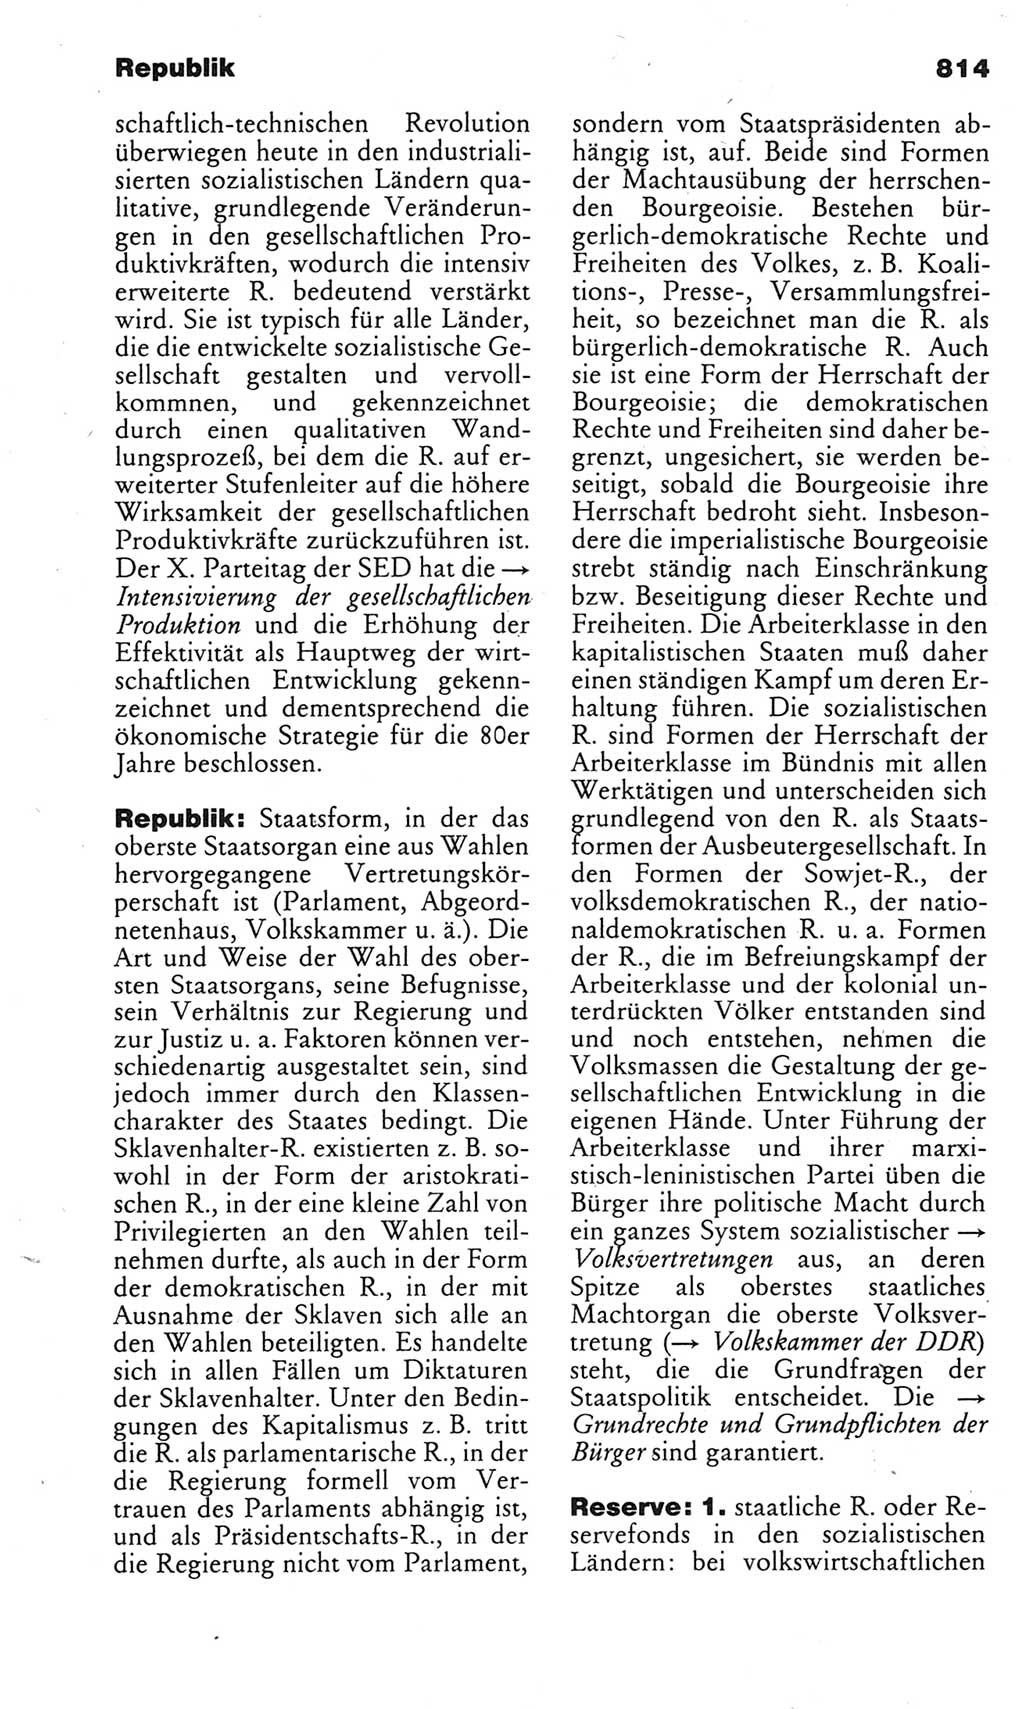 Kleines politisches Wörterbuch [Deutsche Demokratische Republik (DDR)] 1983, Seite 814 (Kl. pol. Wb. DDR 1983, S. 814)